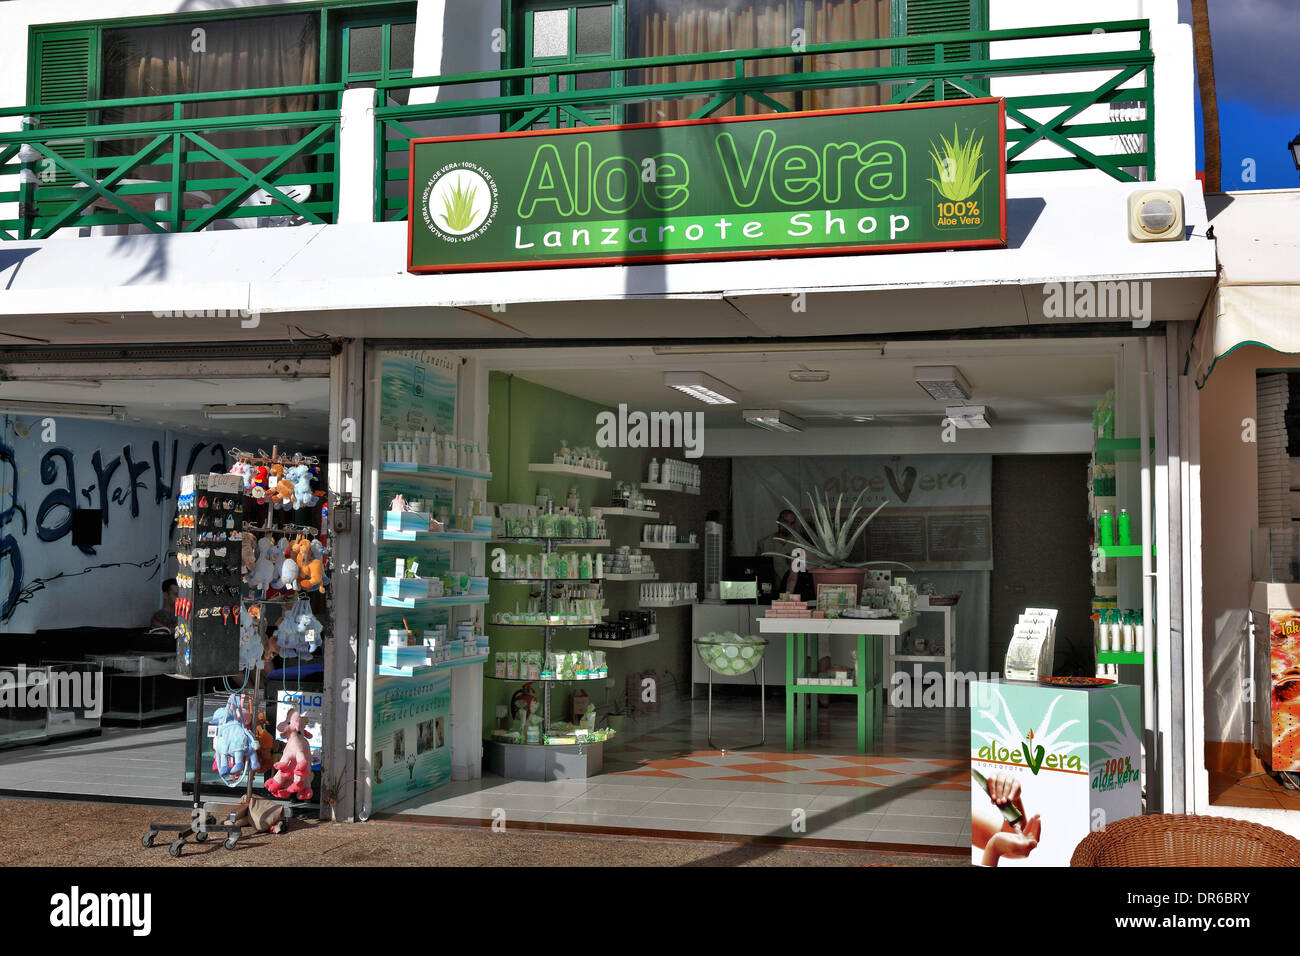 tafel Opname voorkant Aloe Vera shop in Puerto del Carmen, Lanzarote, Canary islands, canaries,  spain Stock Photo - Alamy